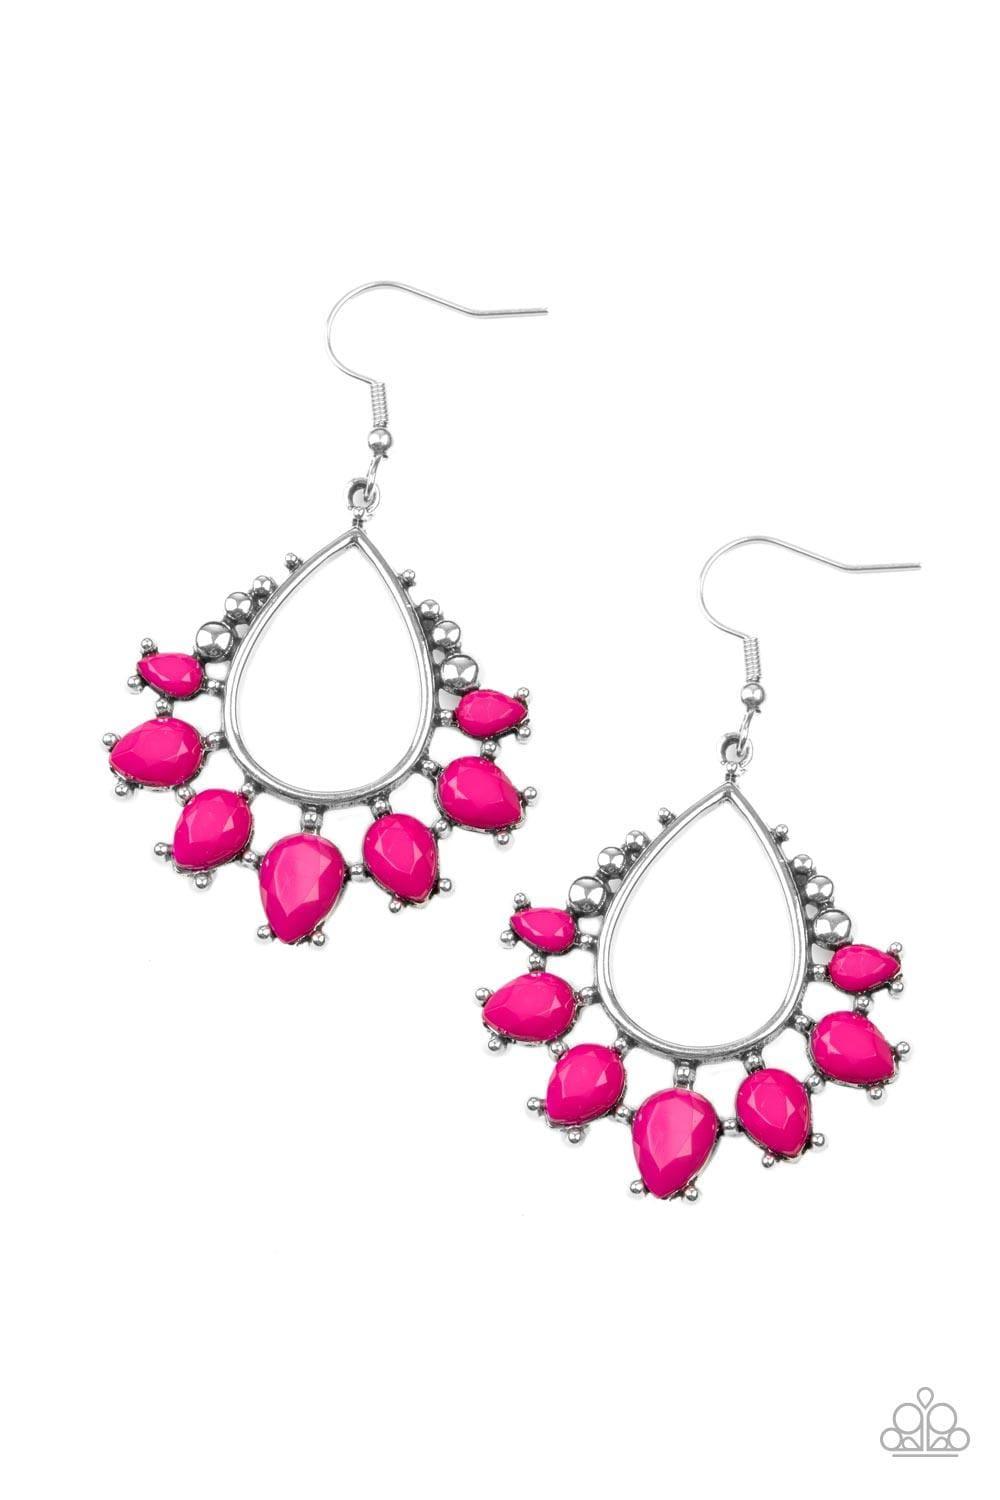 Paparazzi Accessories - Flamboyant Ferocity - Pink Earrings - Bling by JessieK